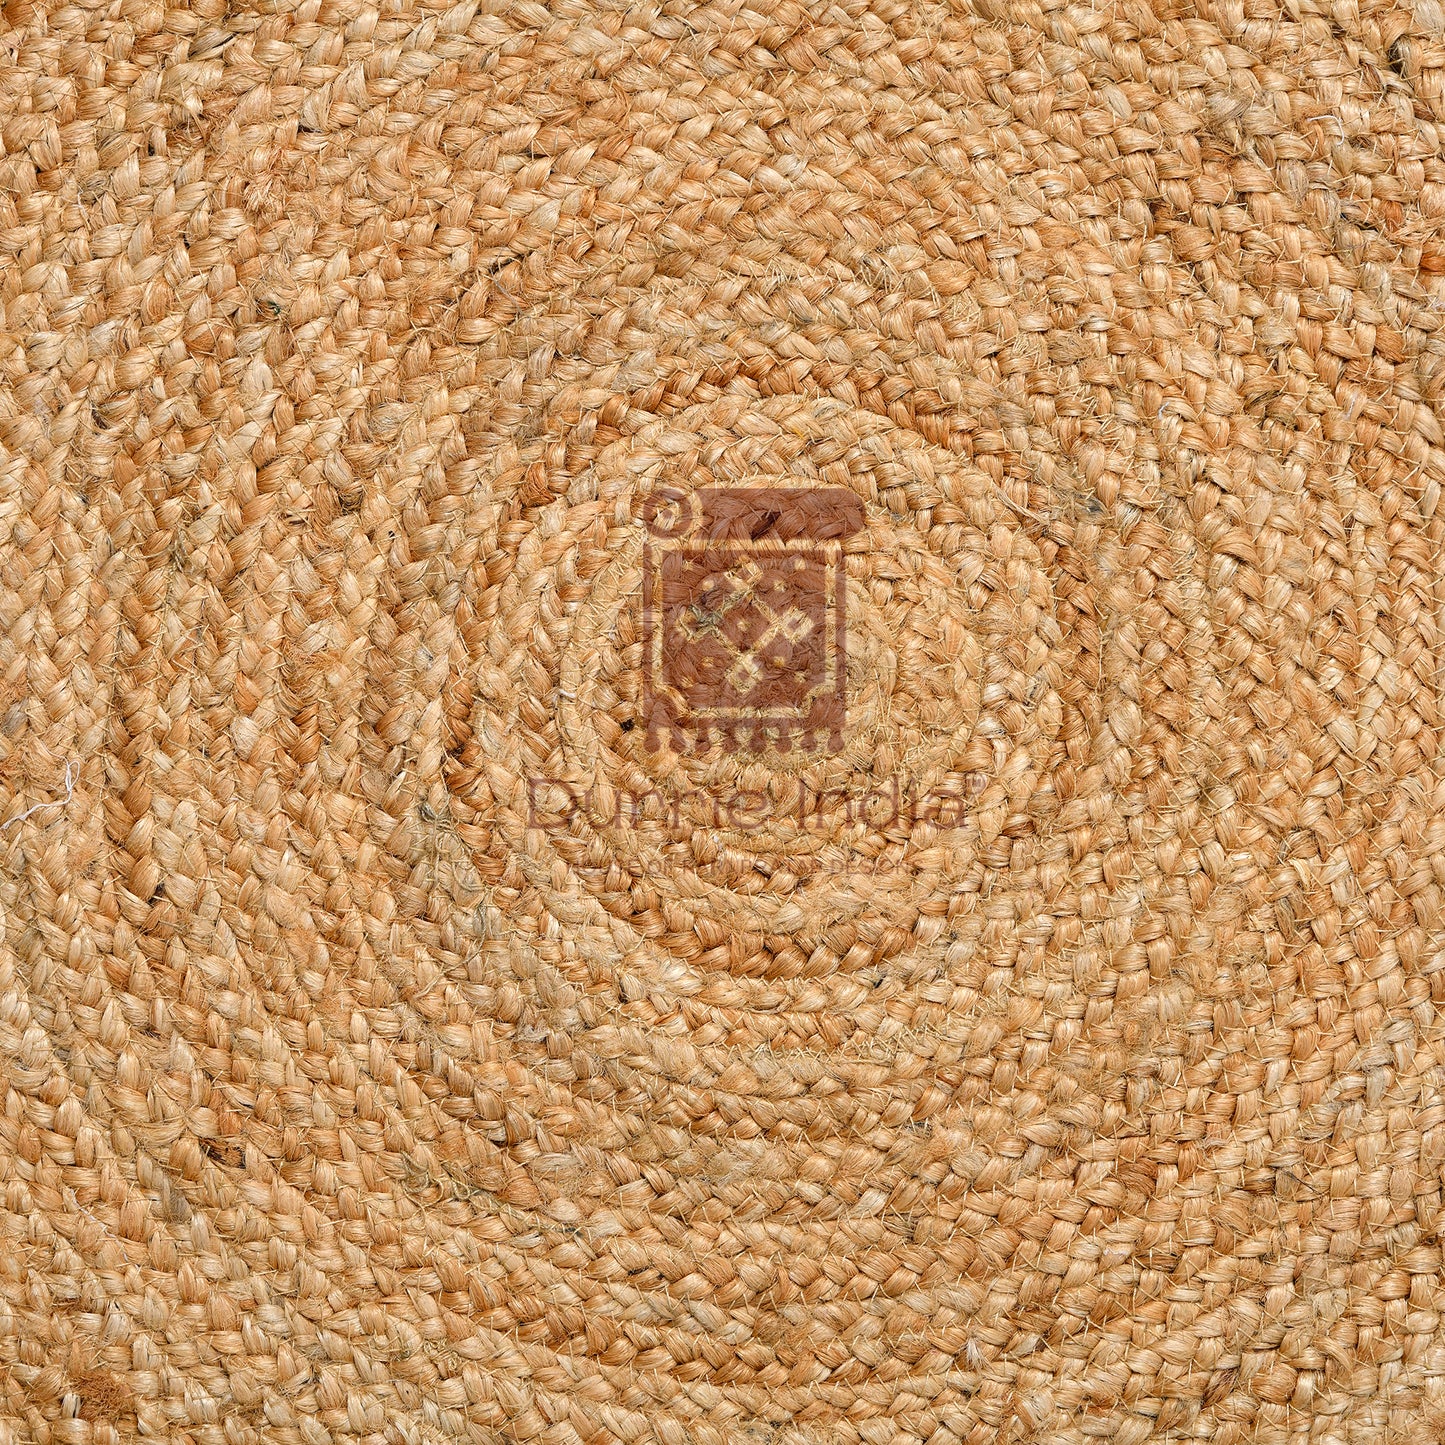 Handmade Crochet Web Border Round Hemp Rug - Artisanal Elegance for Your Living Space